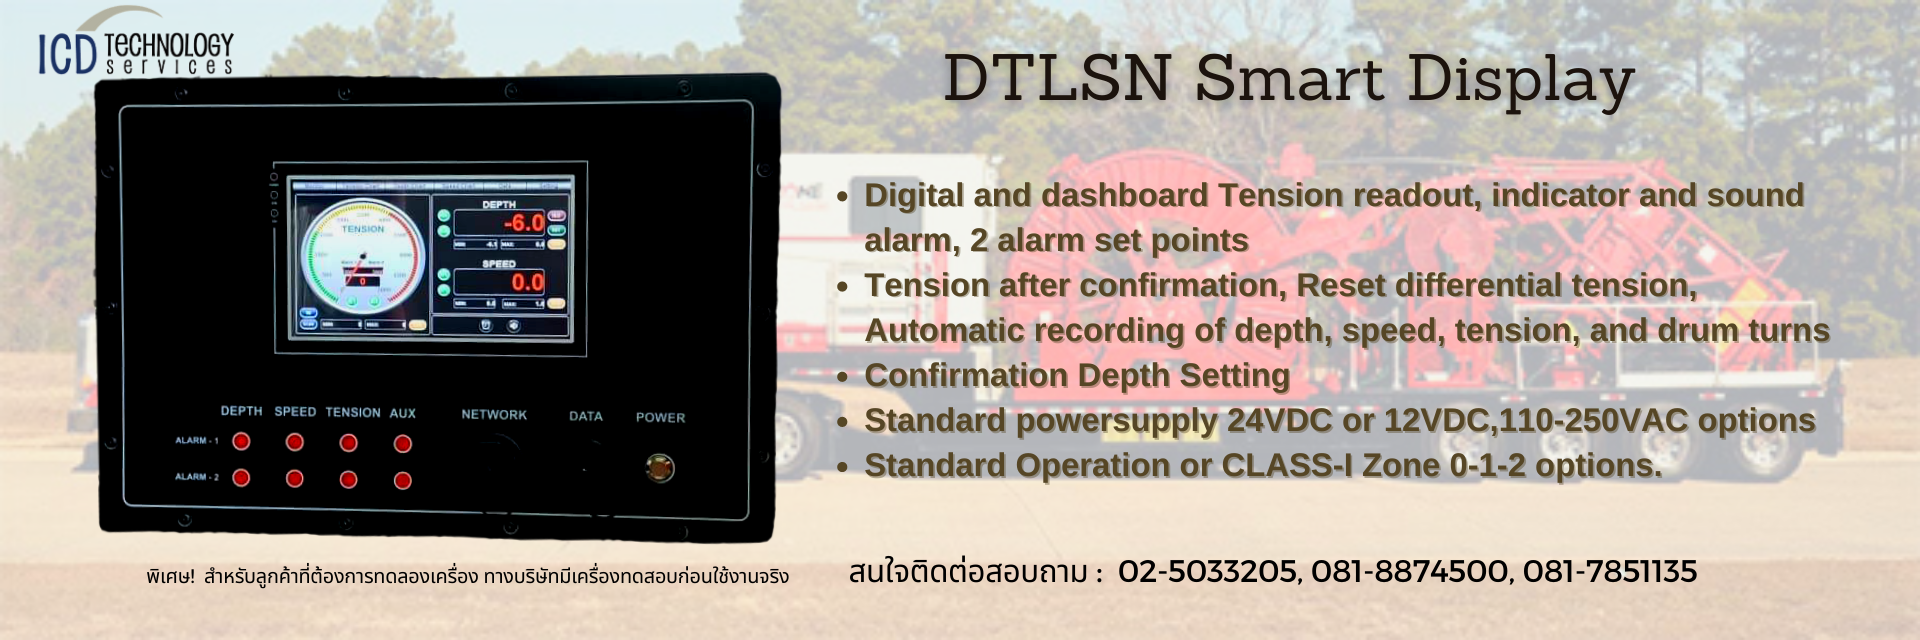 DTLSN Smart Display